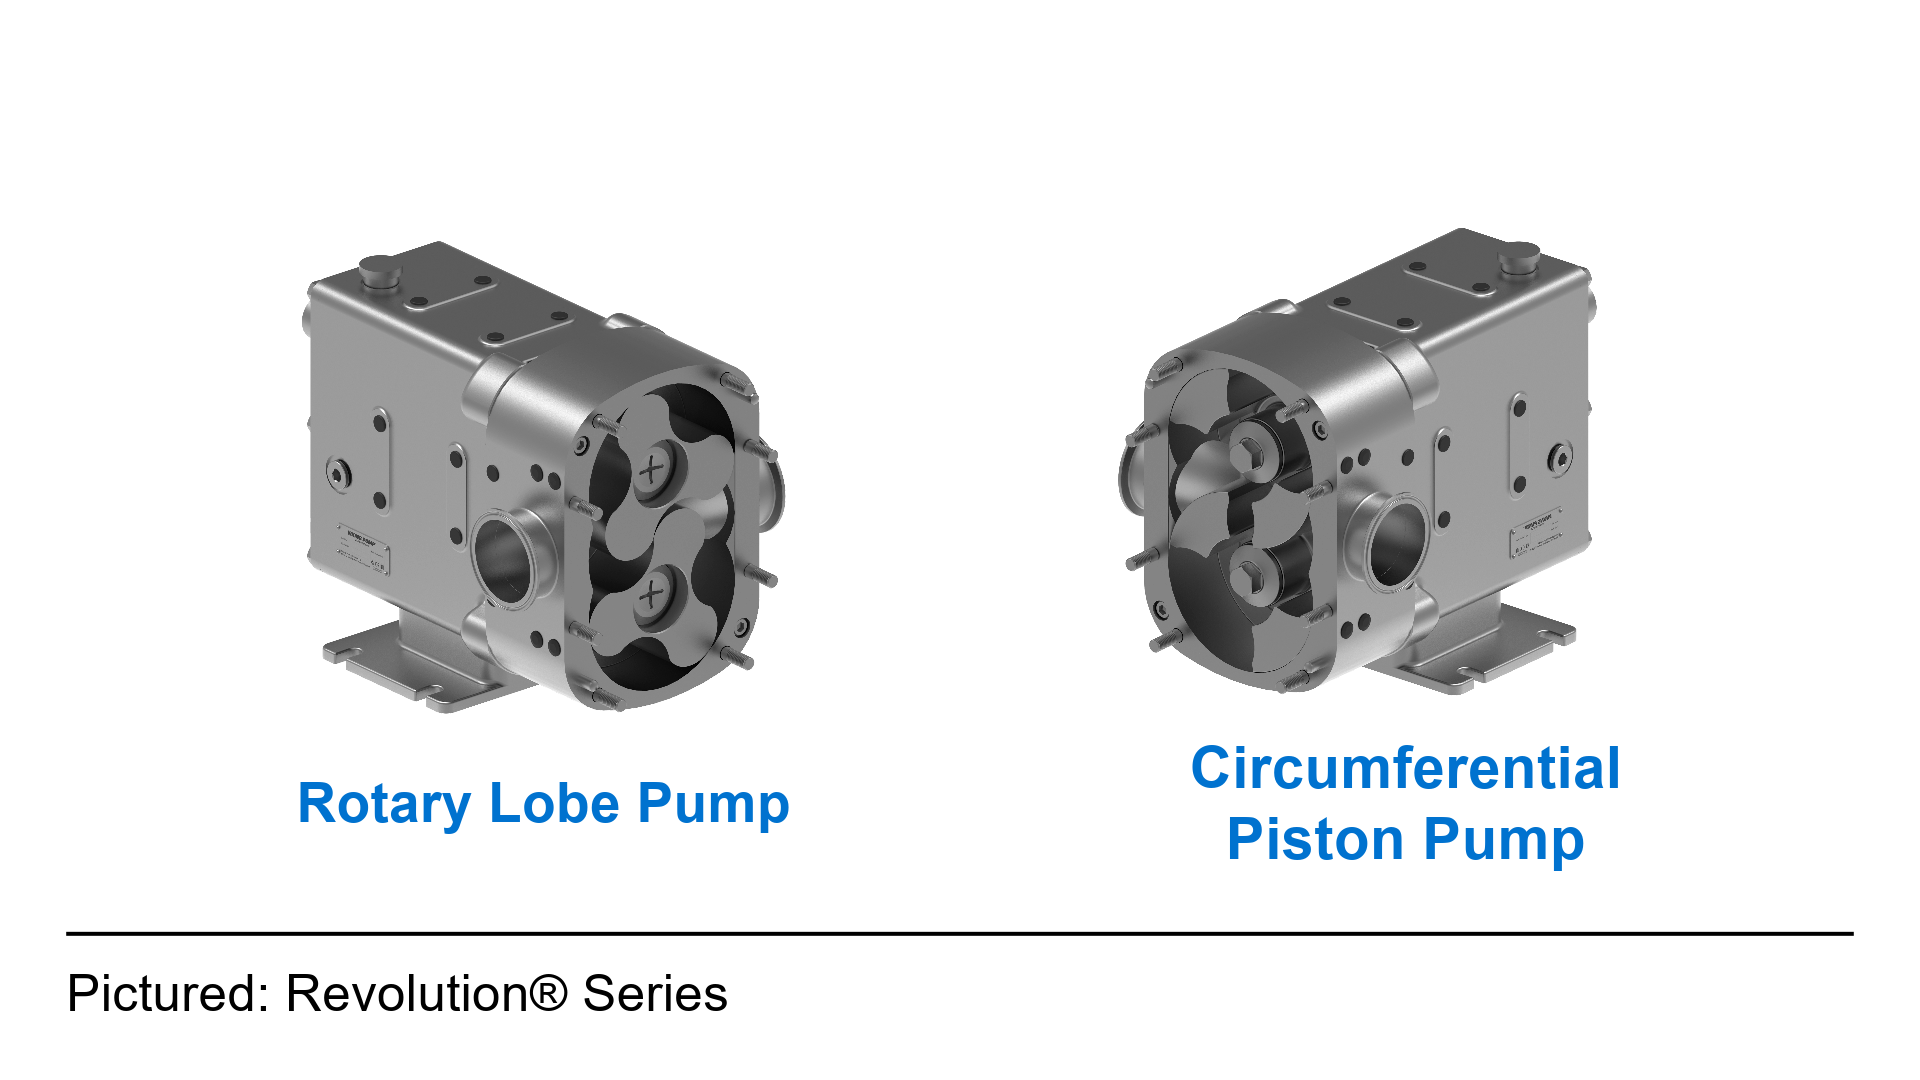 Revolution rotary lobe pump compared with a revolution circumferential piston pump